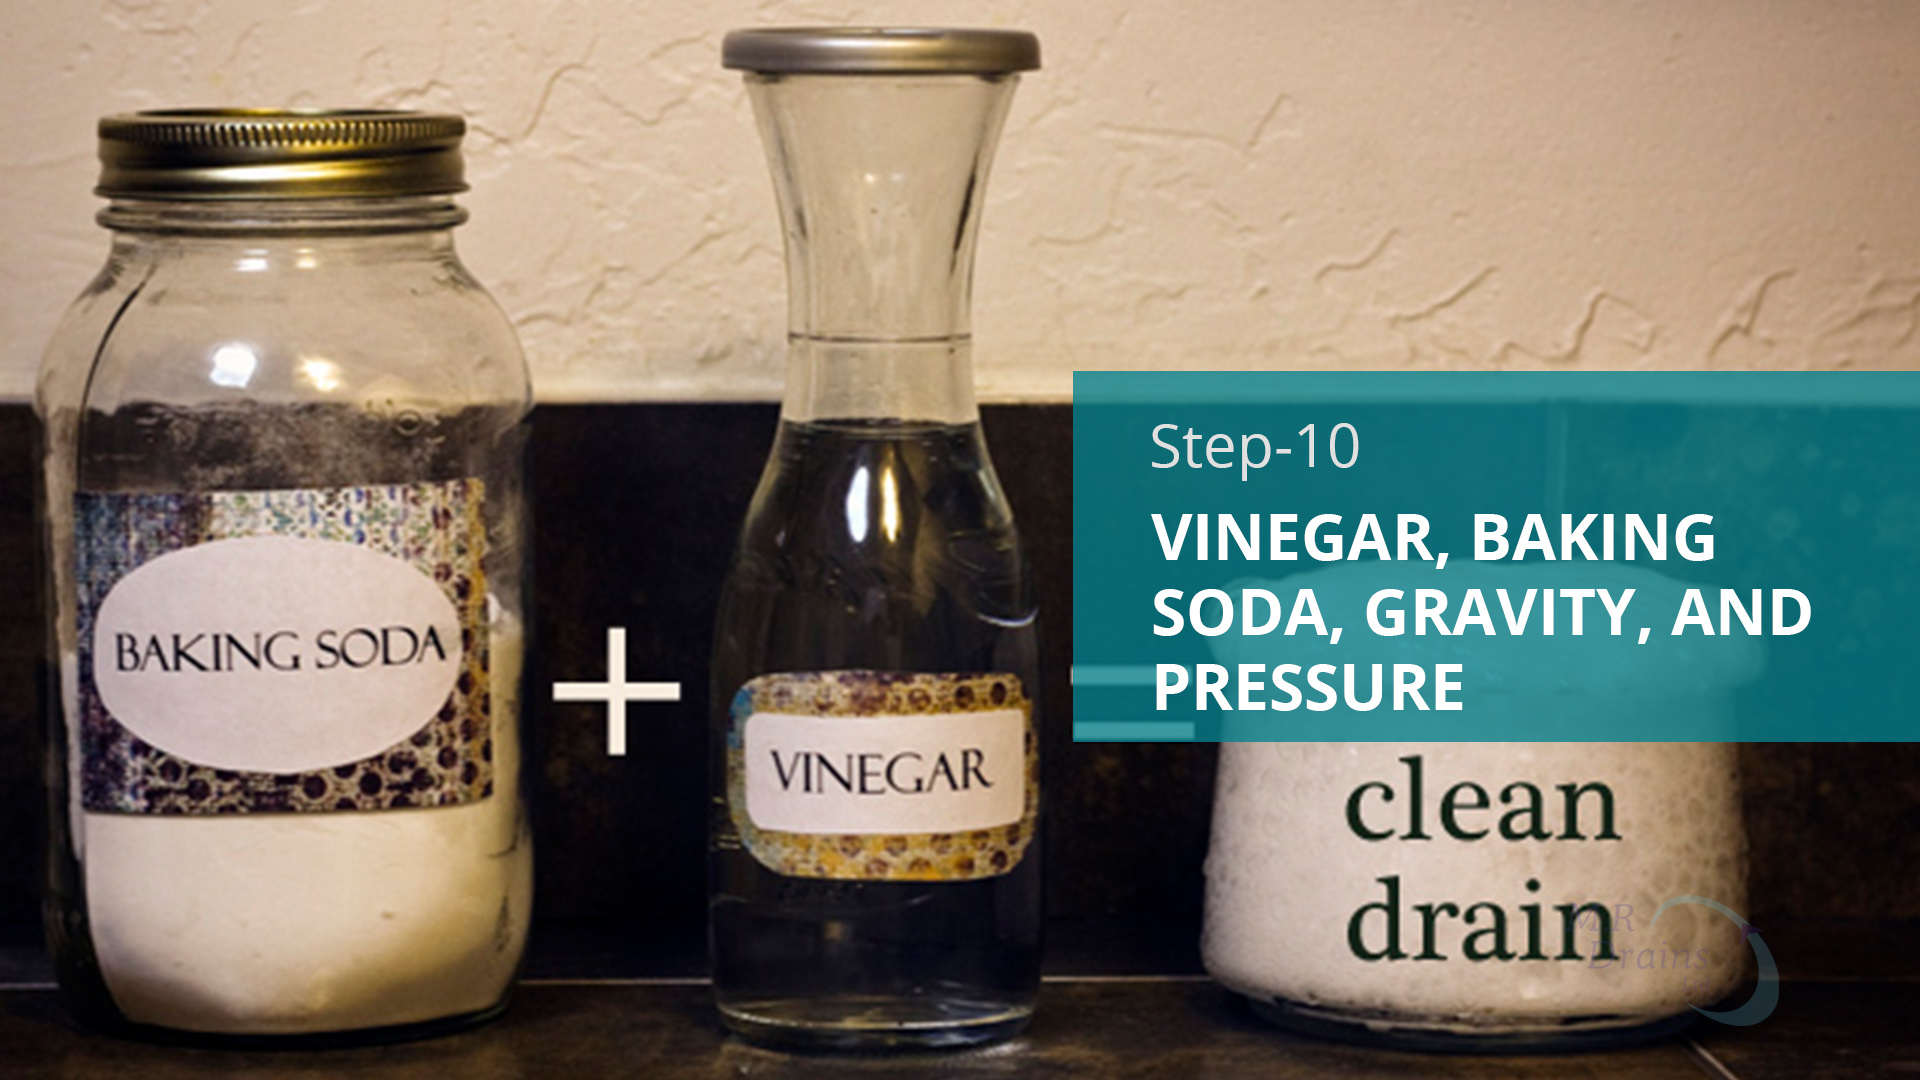 Vinegar, Baking Soda, Gravity, and Pressure